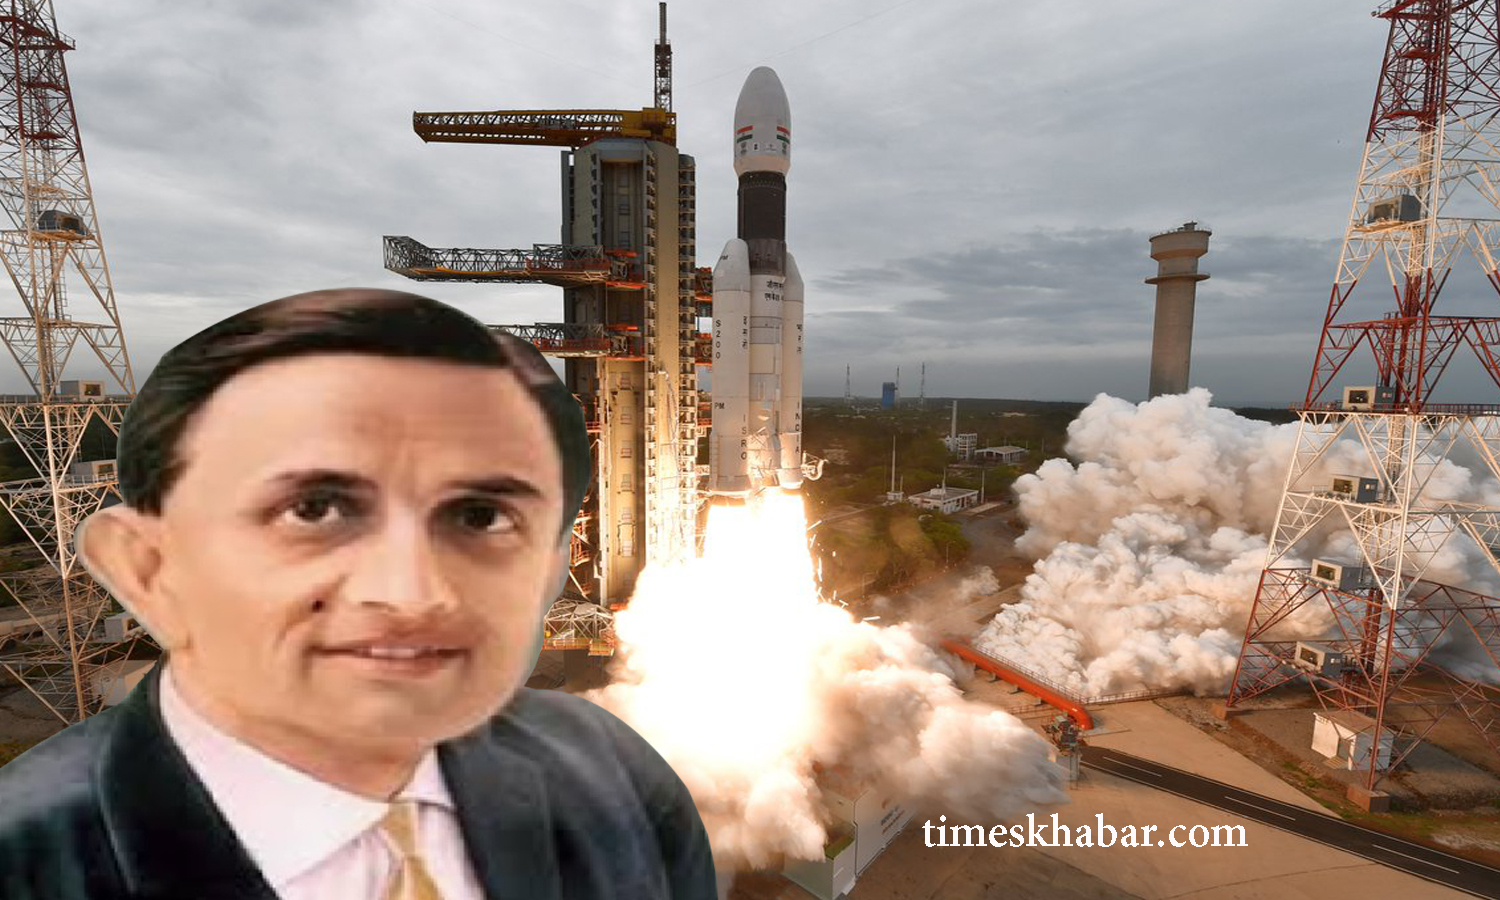 अंतरिक्ष विज्ञान में देश की वास्तिवक समस्याओं को दूर करने की क्षमता है। इसे पहचाना डॉ साराभाई ने। इसरो की स्थापना हुई।